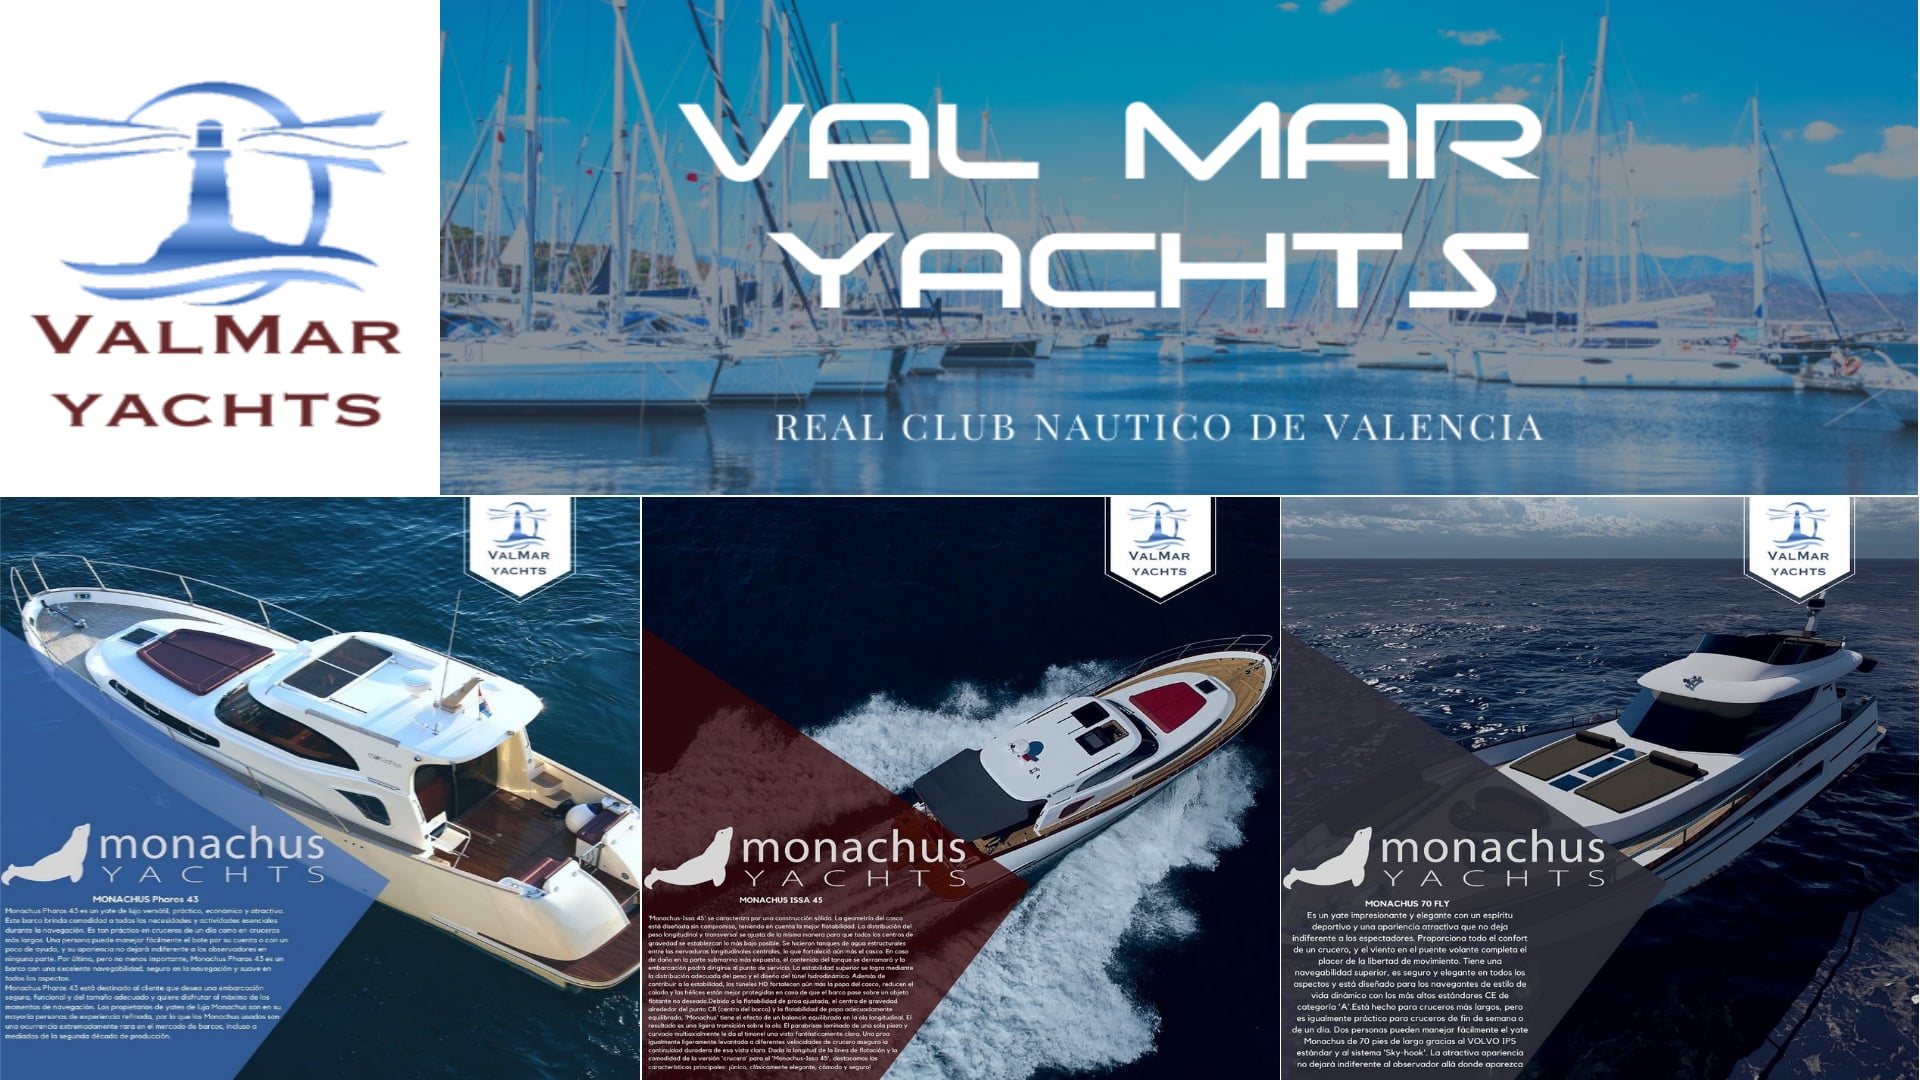 Nouveau représentant autorisé des bateaux Monachus Yachts pour l’Espagne